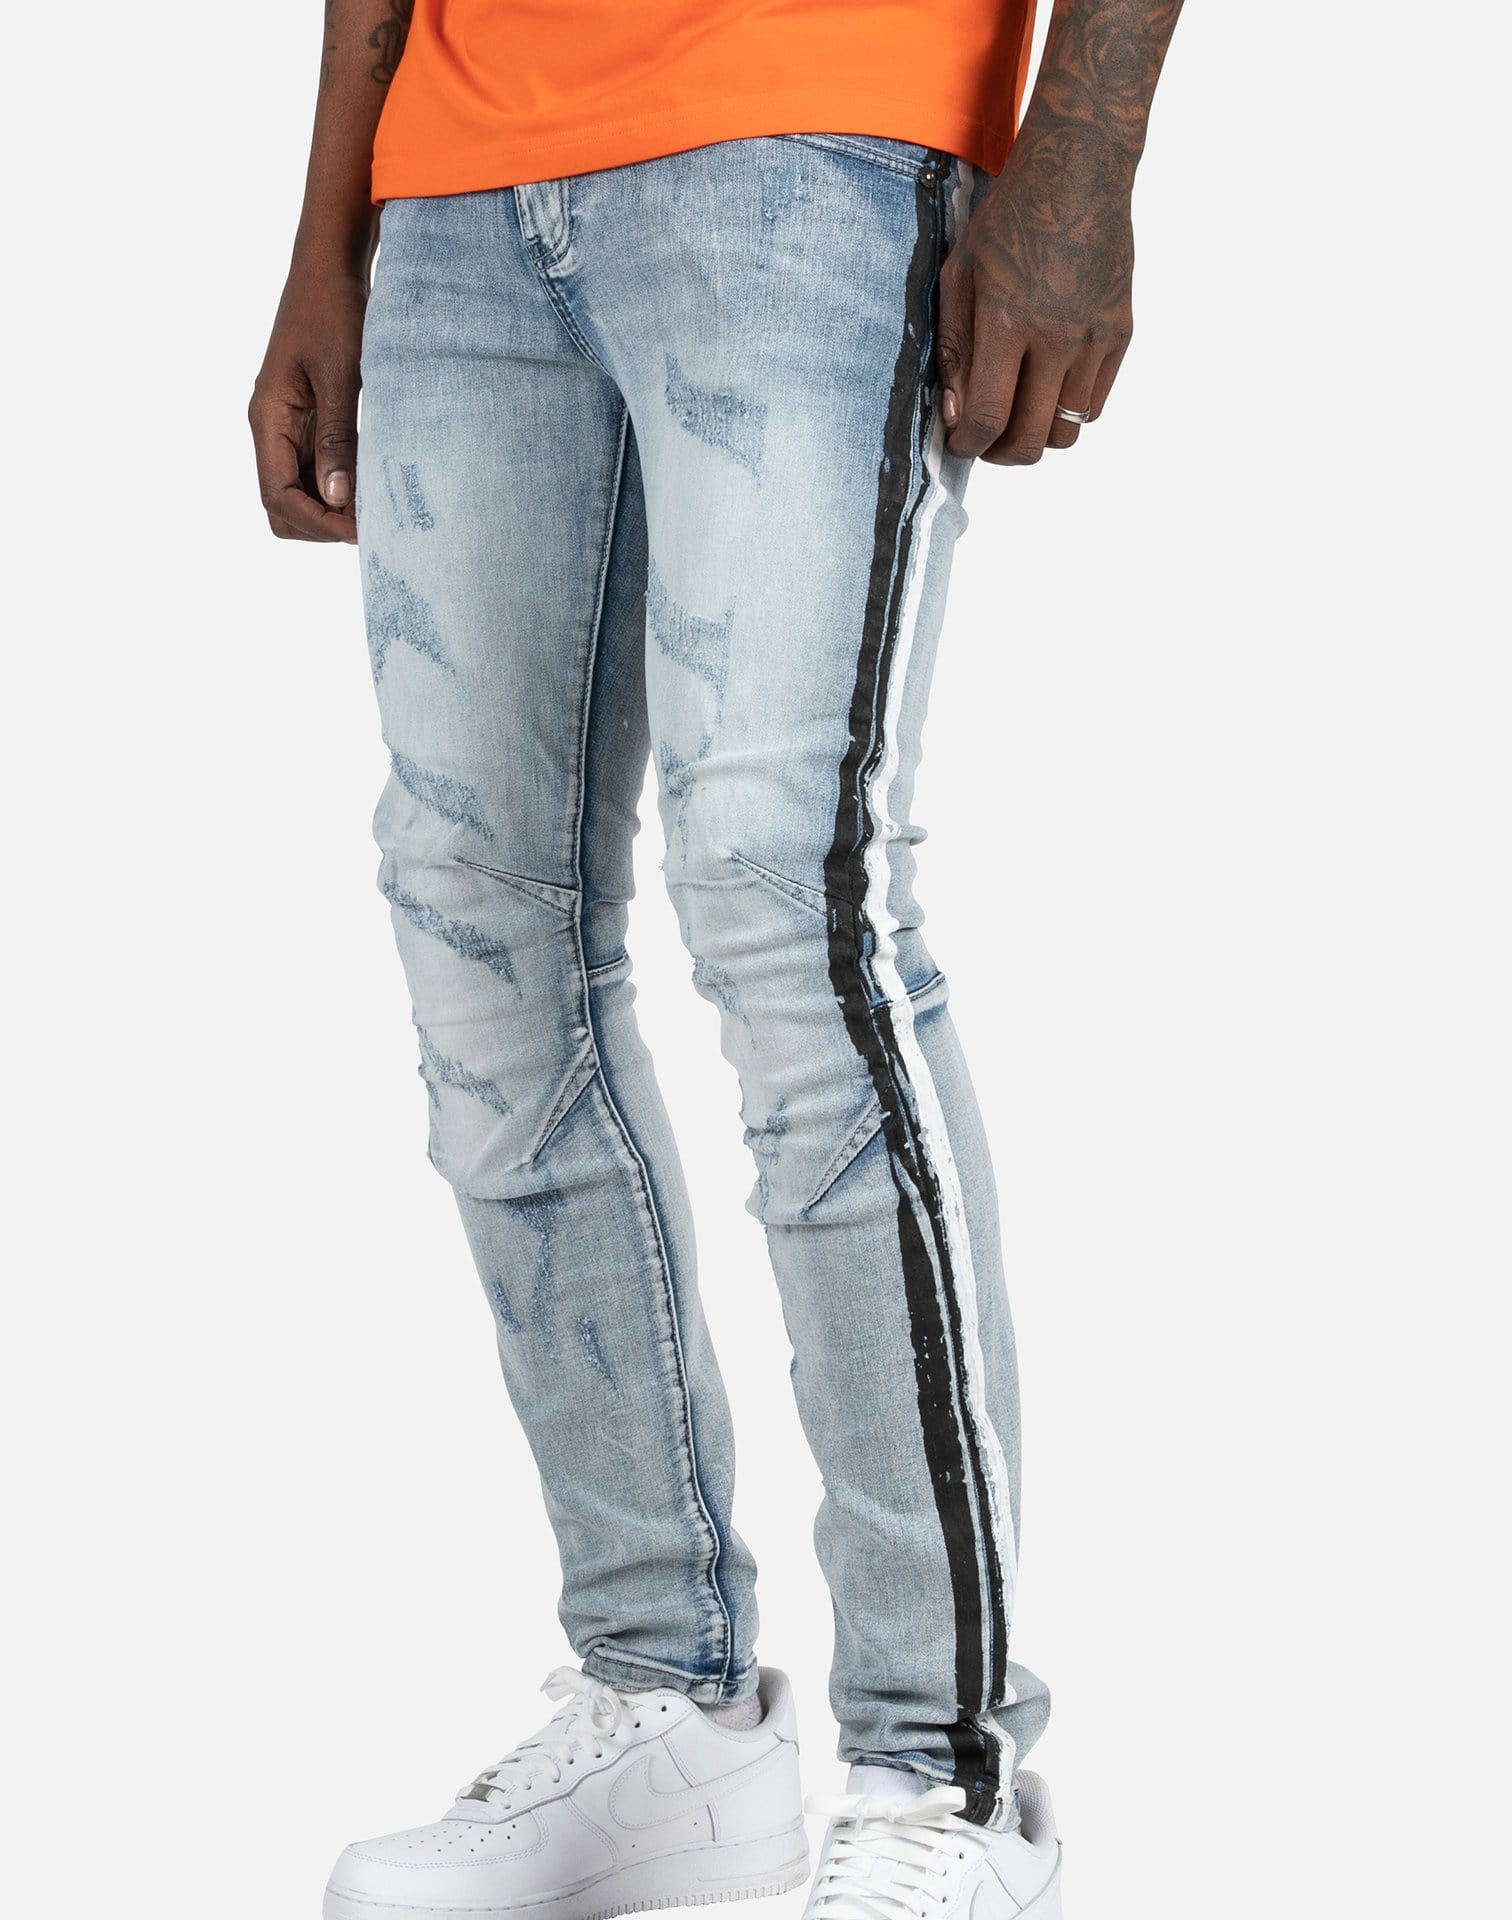 Kilogram Denim Jeans – DTLR